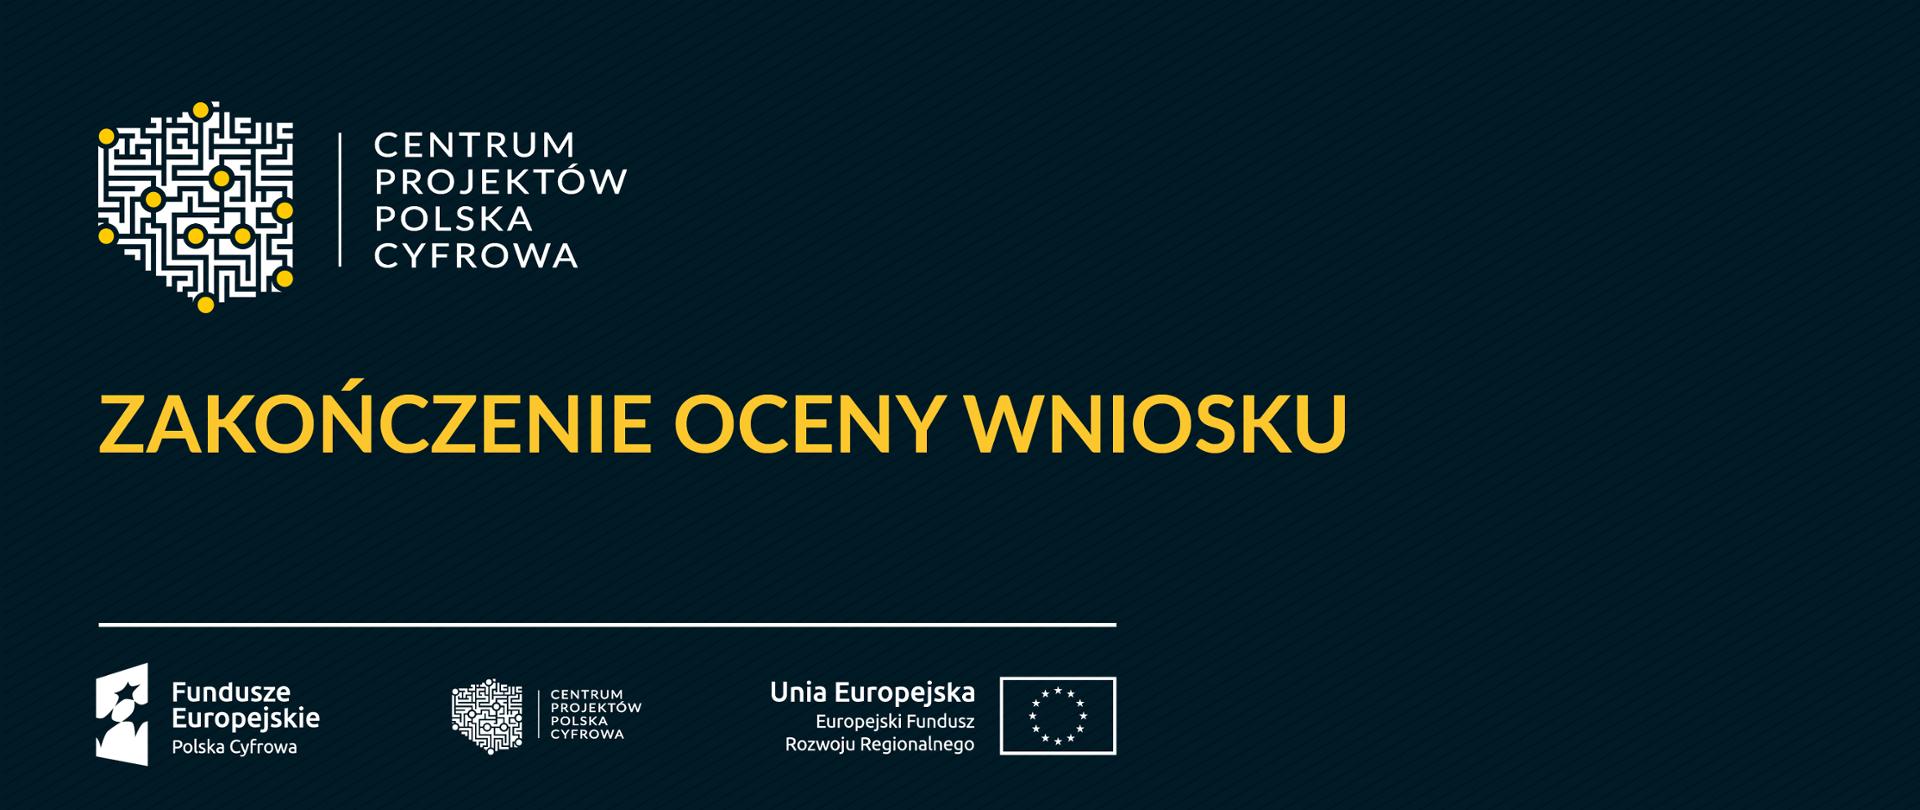 Baner: Zakończenie oceny wniosku. Logociąg: Fundusze Europejskie Polska Cyfrowa, Centrum Projektów Polska Cyfrowa oraz Unia Europejska Europejski Fundusz Rozwoju Regionalnego.